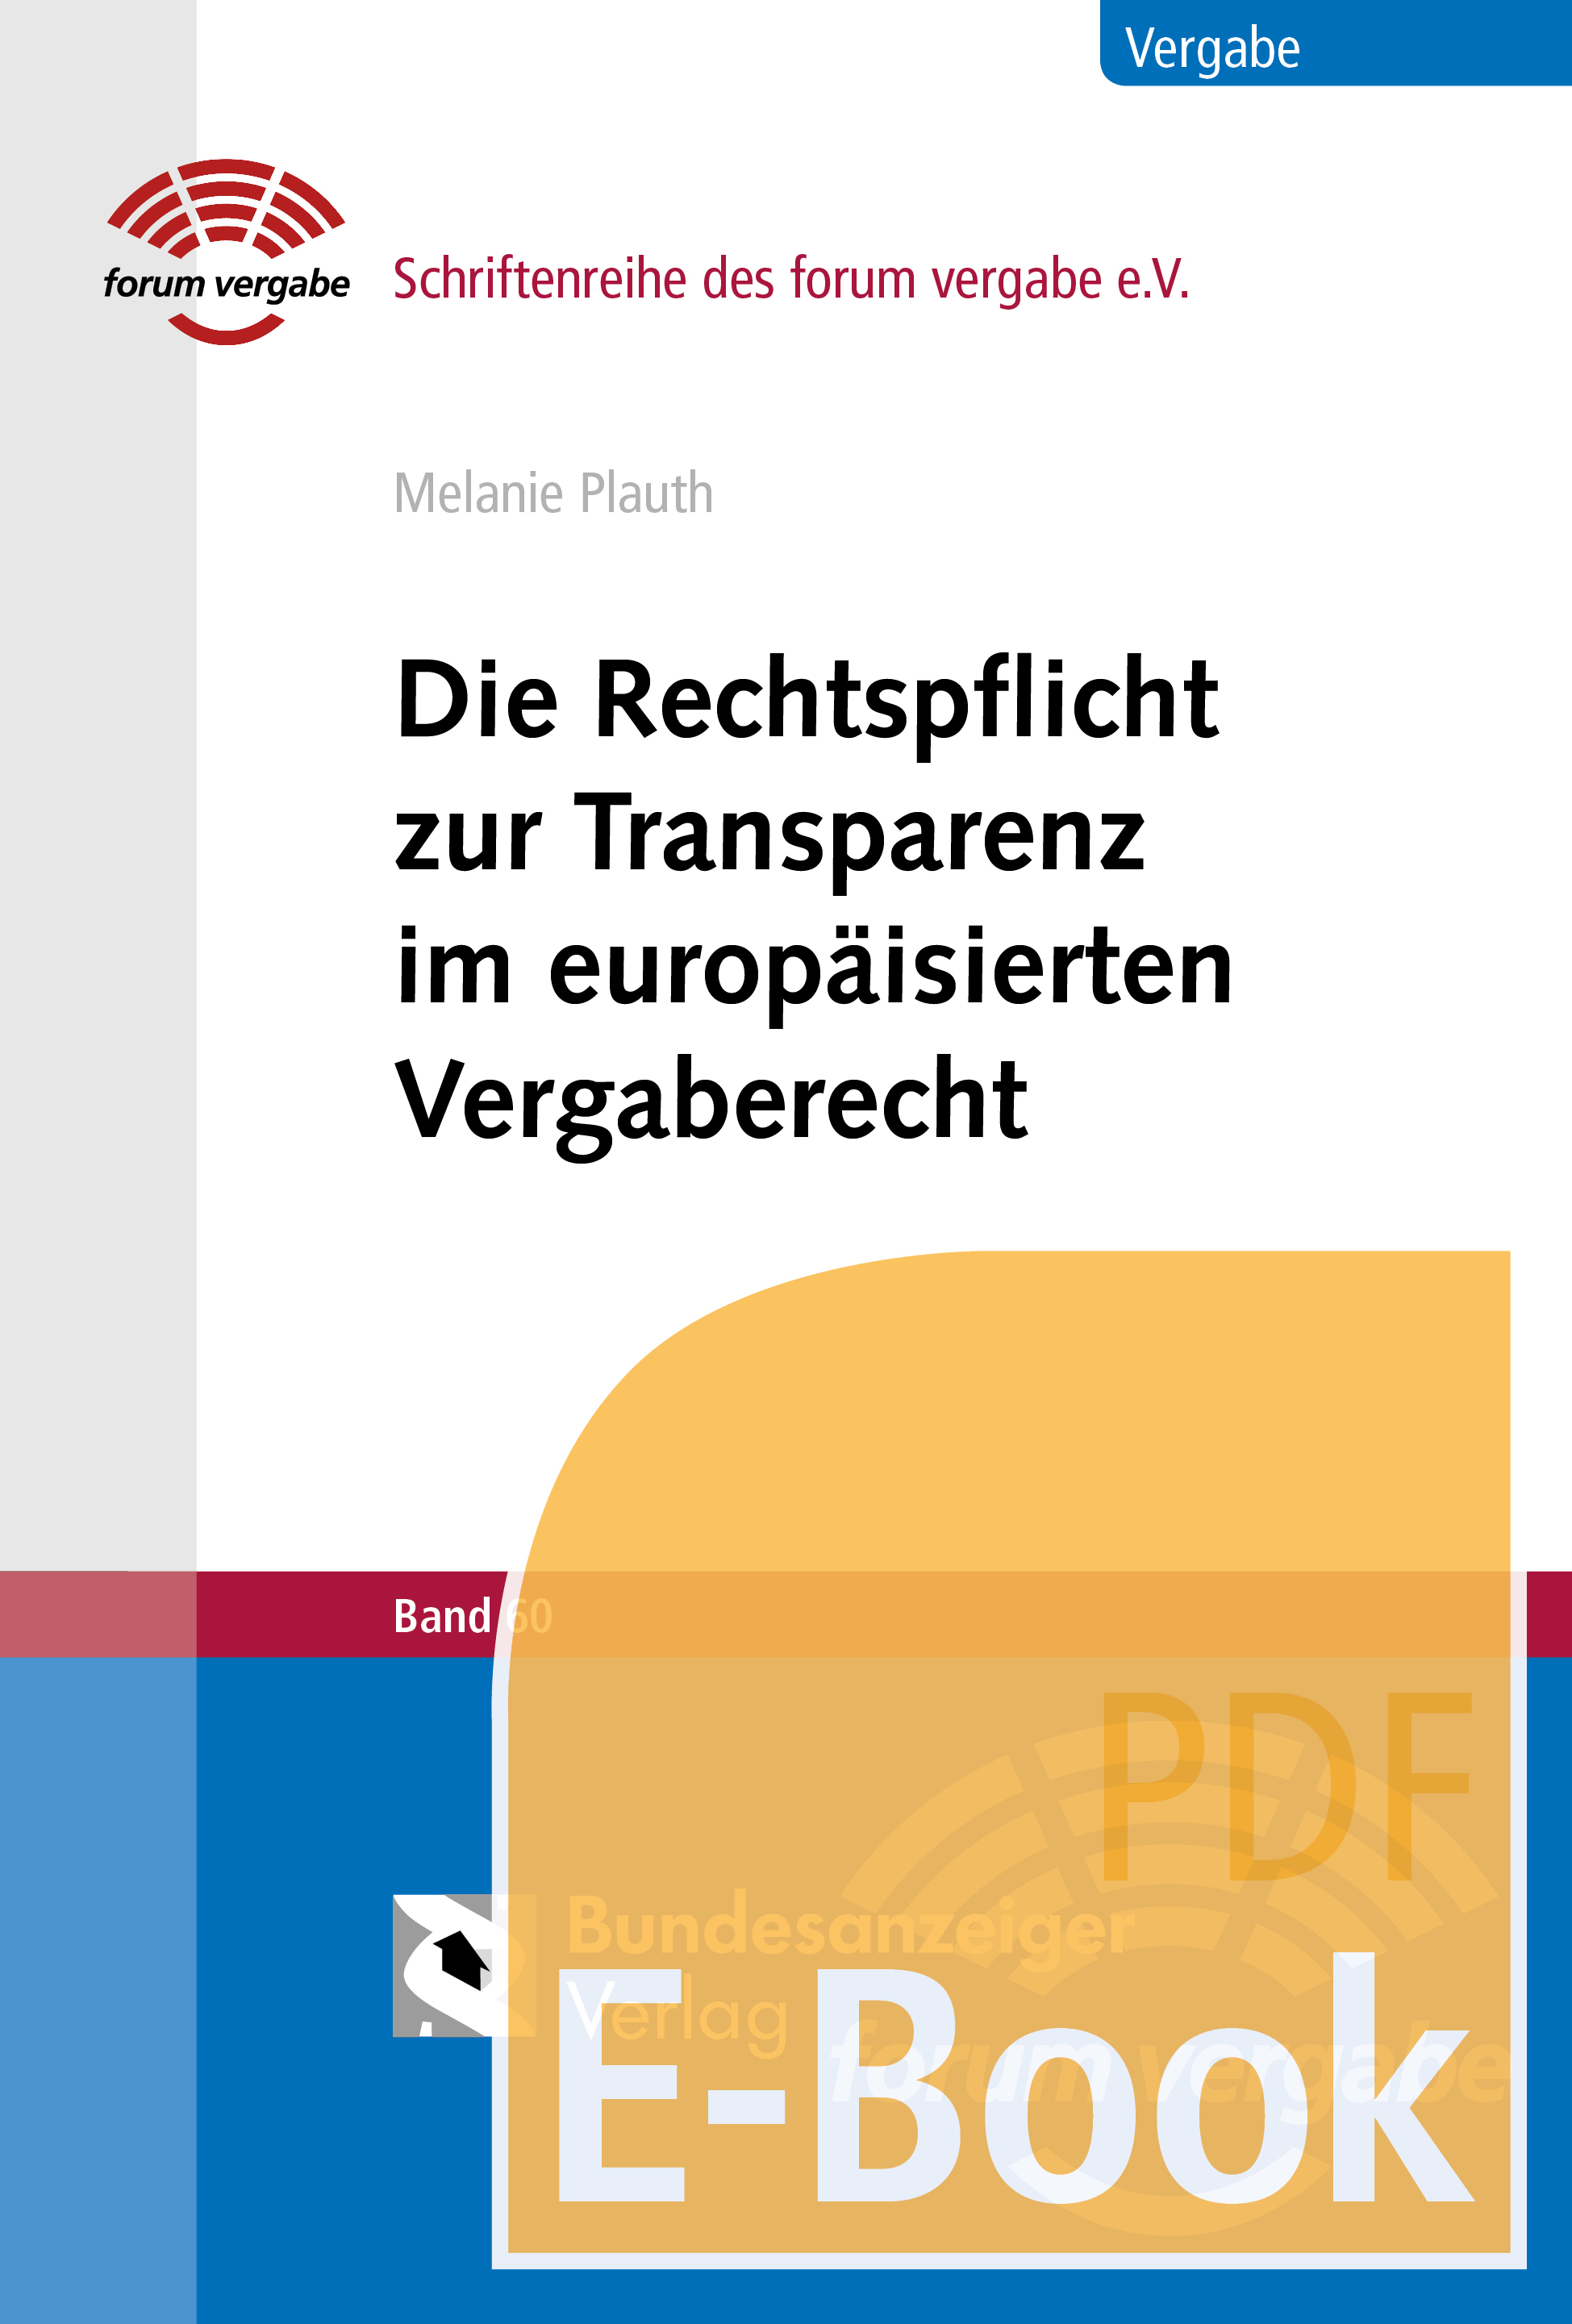 Die Rechtspflicht zur Transparenz im europäisierten Vergaberecht (E-Book)